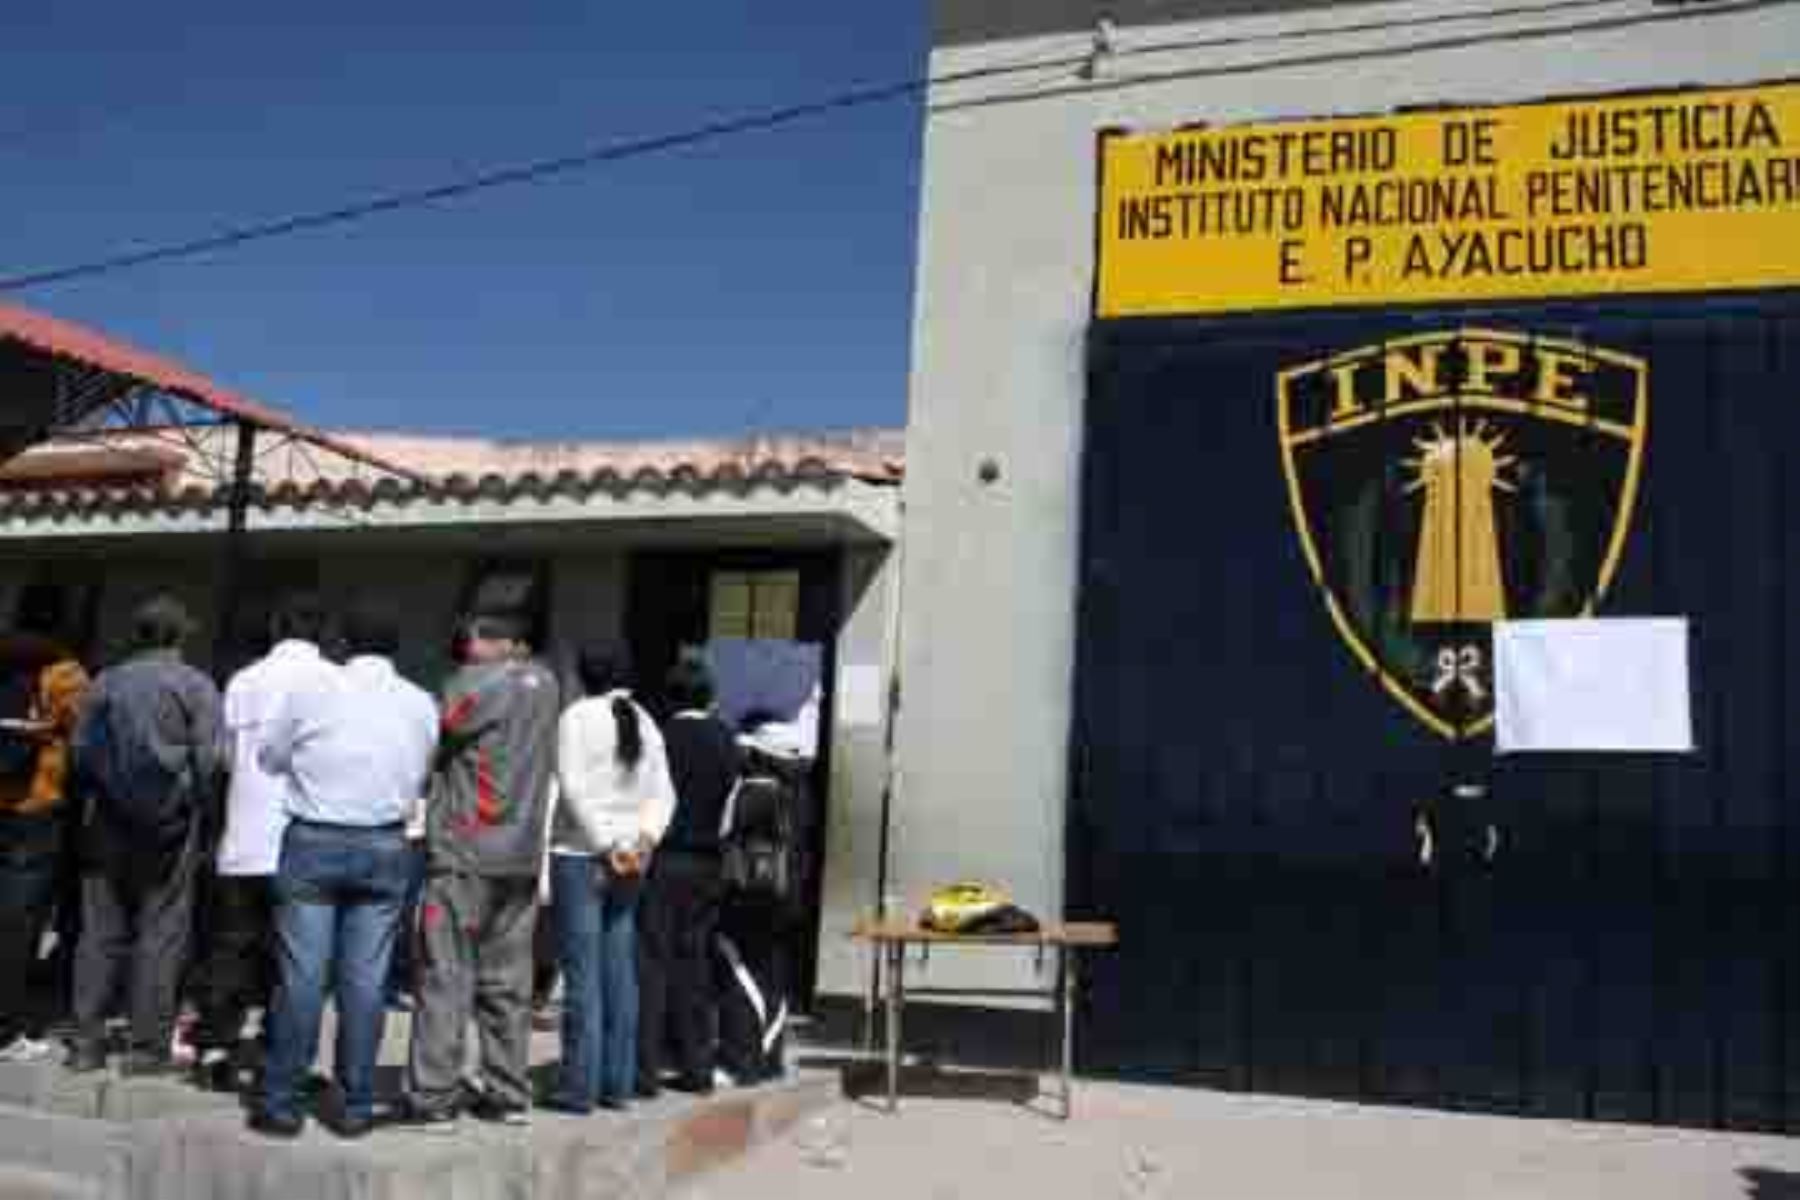 El Instituto Nacional Penitenciario (Inpe) coordina con la Policía Nacional la ubicación y recaptura de tres internos que fugaron del penal de Ayacucho en la víspera, quienes una vez detenidos serán trasladados a cárceles de máxima seguridad.